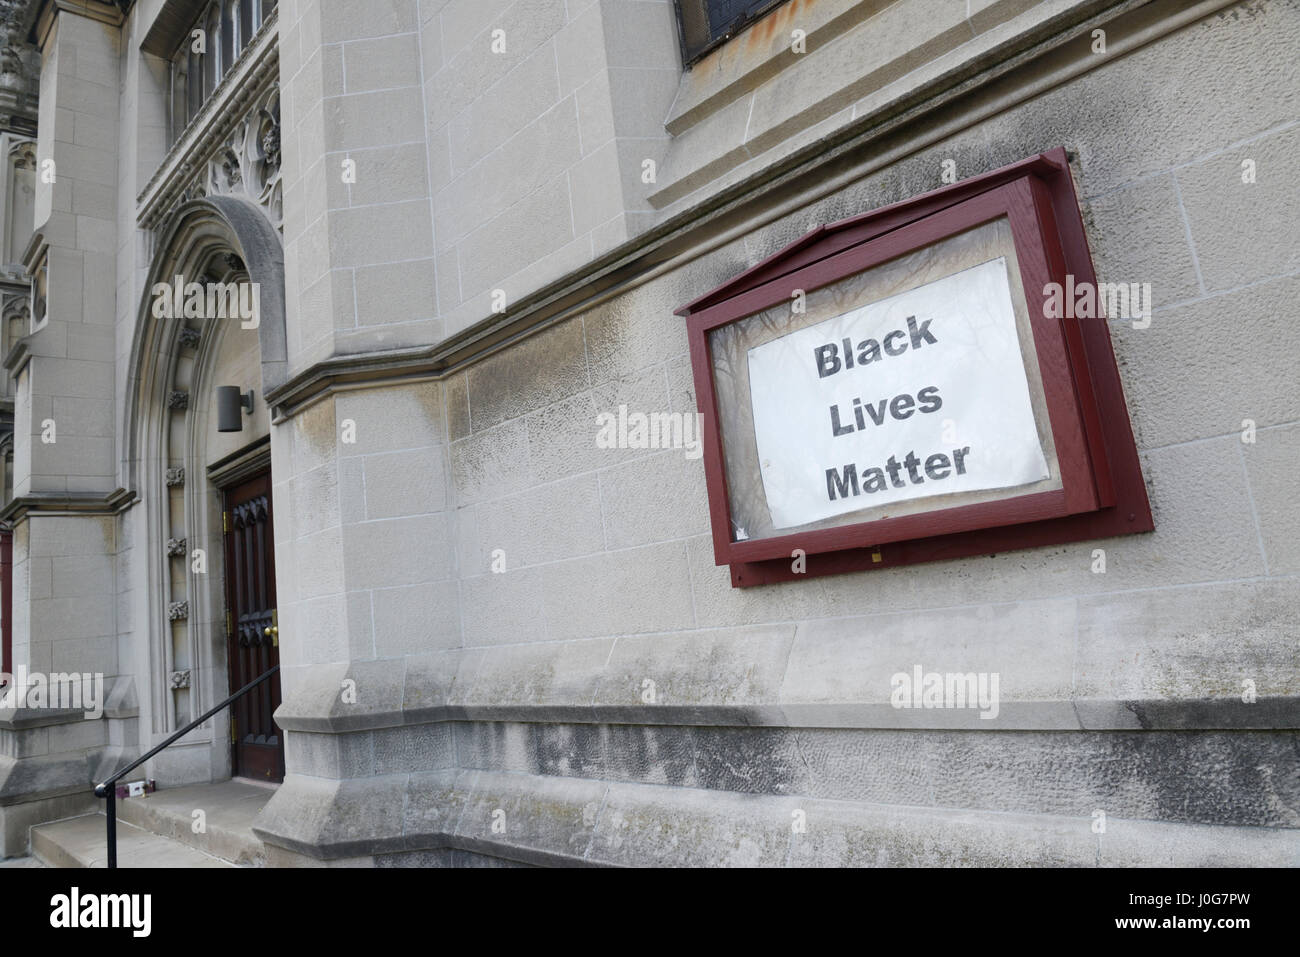 Black vit Question slogan signe sur un Unitarian Universalist church, NYC Banque D'Images